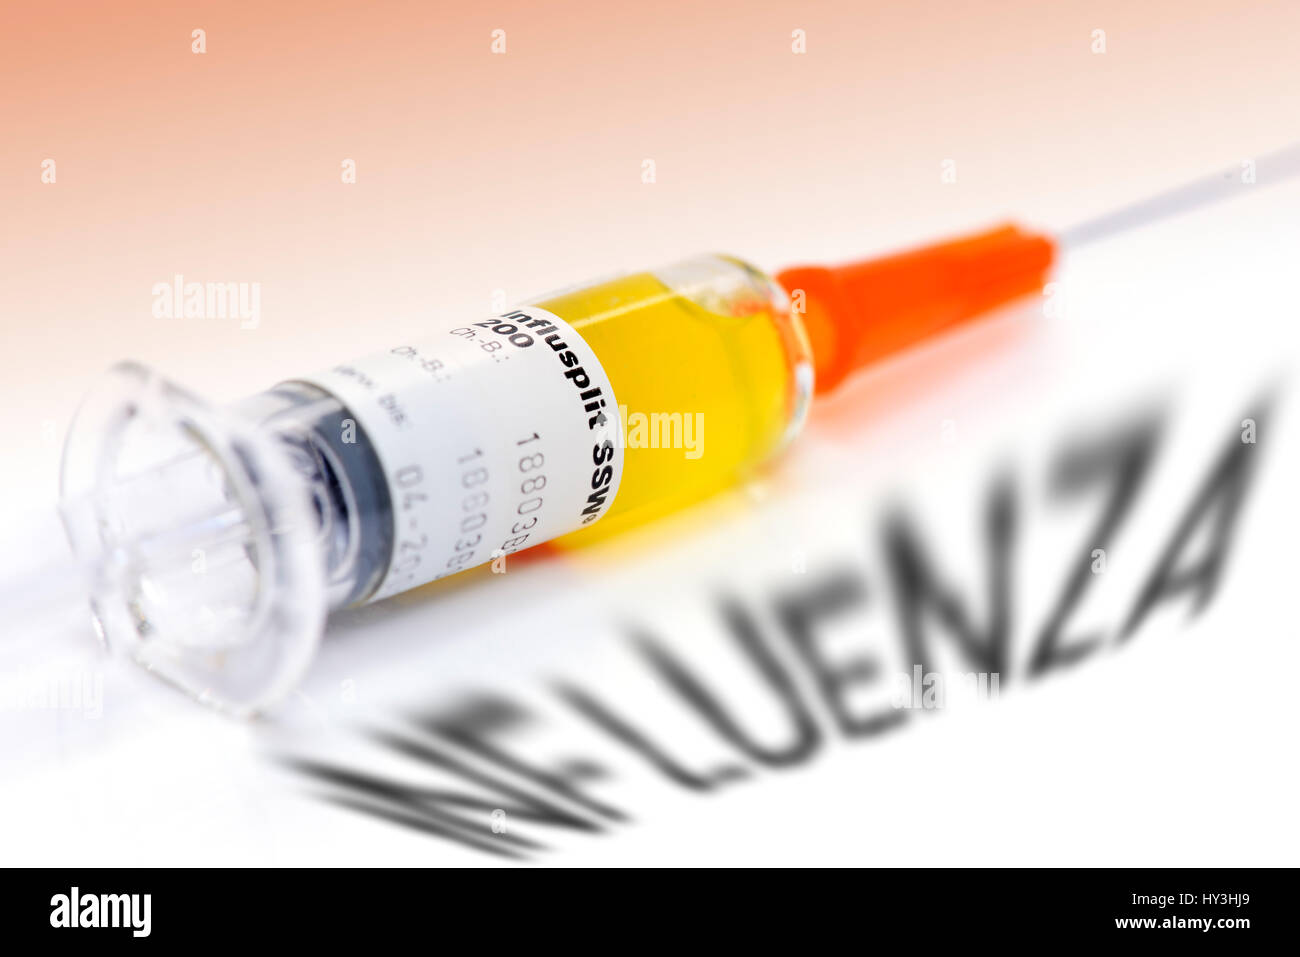 Vaccination syringe and Influenza stroke, vaccination against influenza, Impfspritze und Influenza-Schriftzug, Impfung gegen Grippe Stock Photo